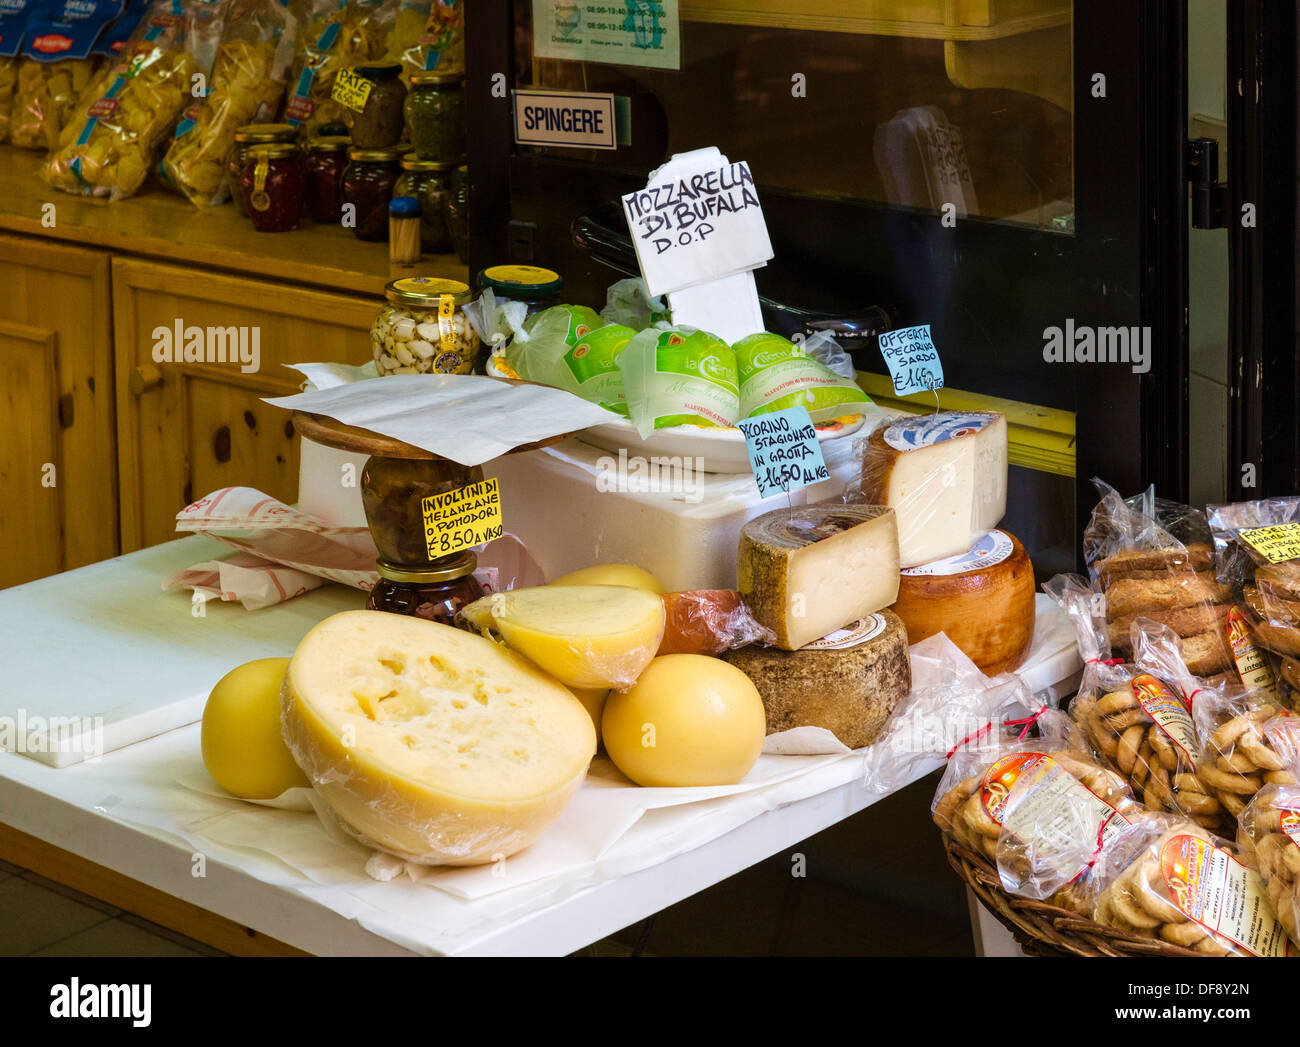 Cheese and other local regional produce in a shop in Reggio Emilia (Reggio nell'Emilia), Emilia Romagna, Italy Stock Photo